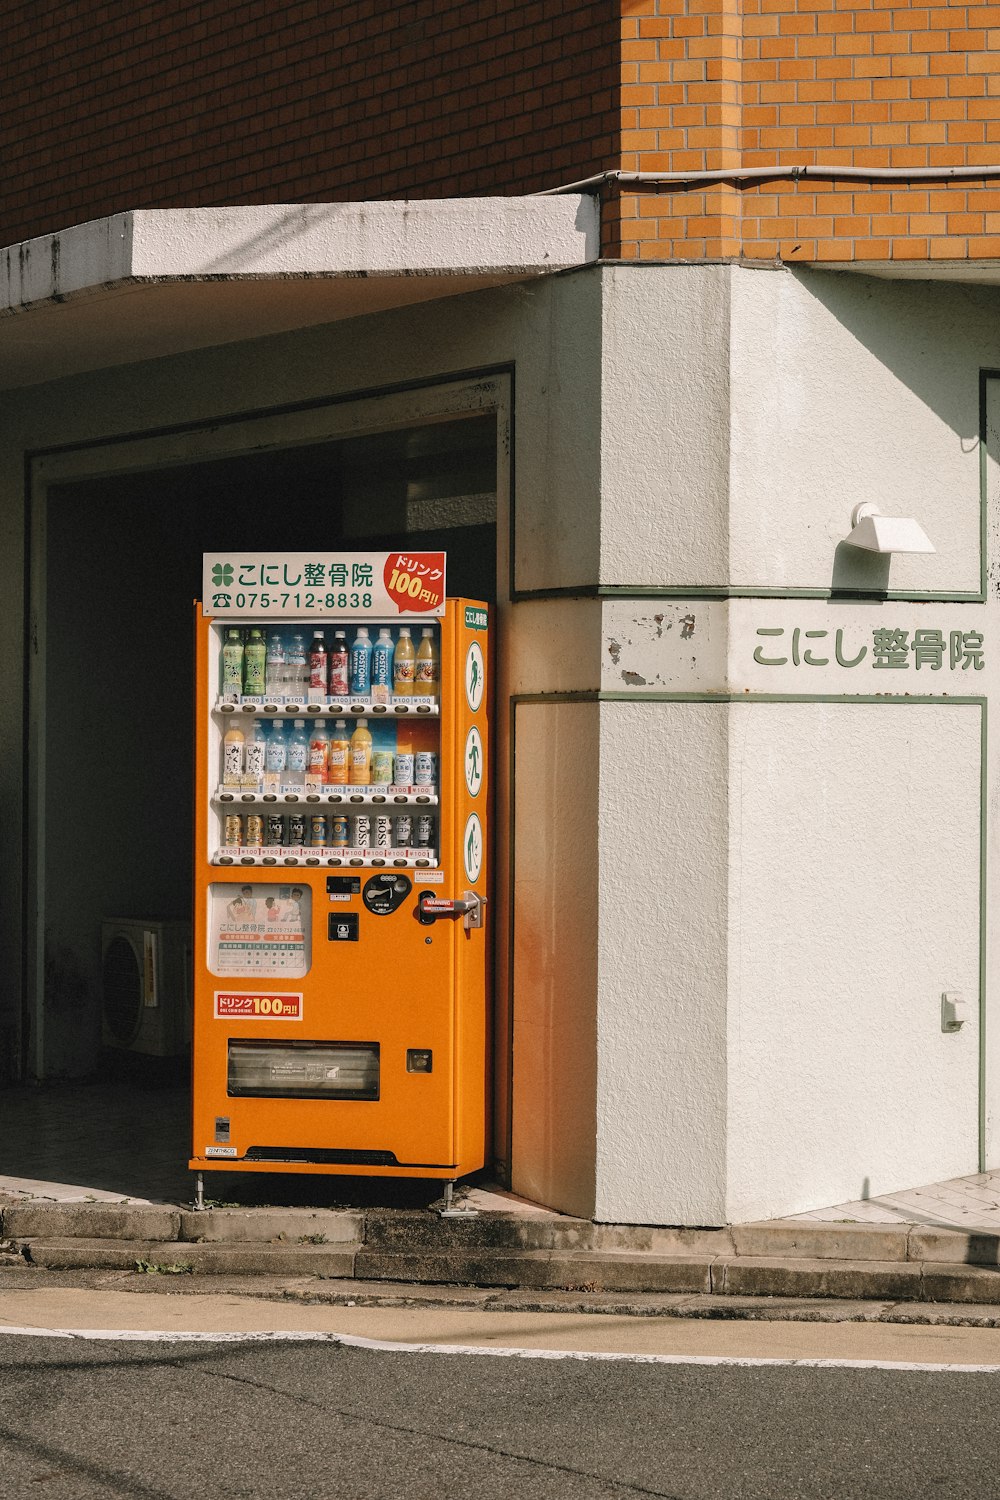 Distributore automatico arancione vicino all'edificio